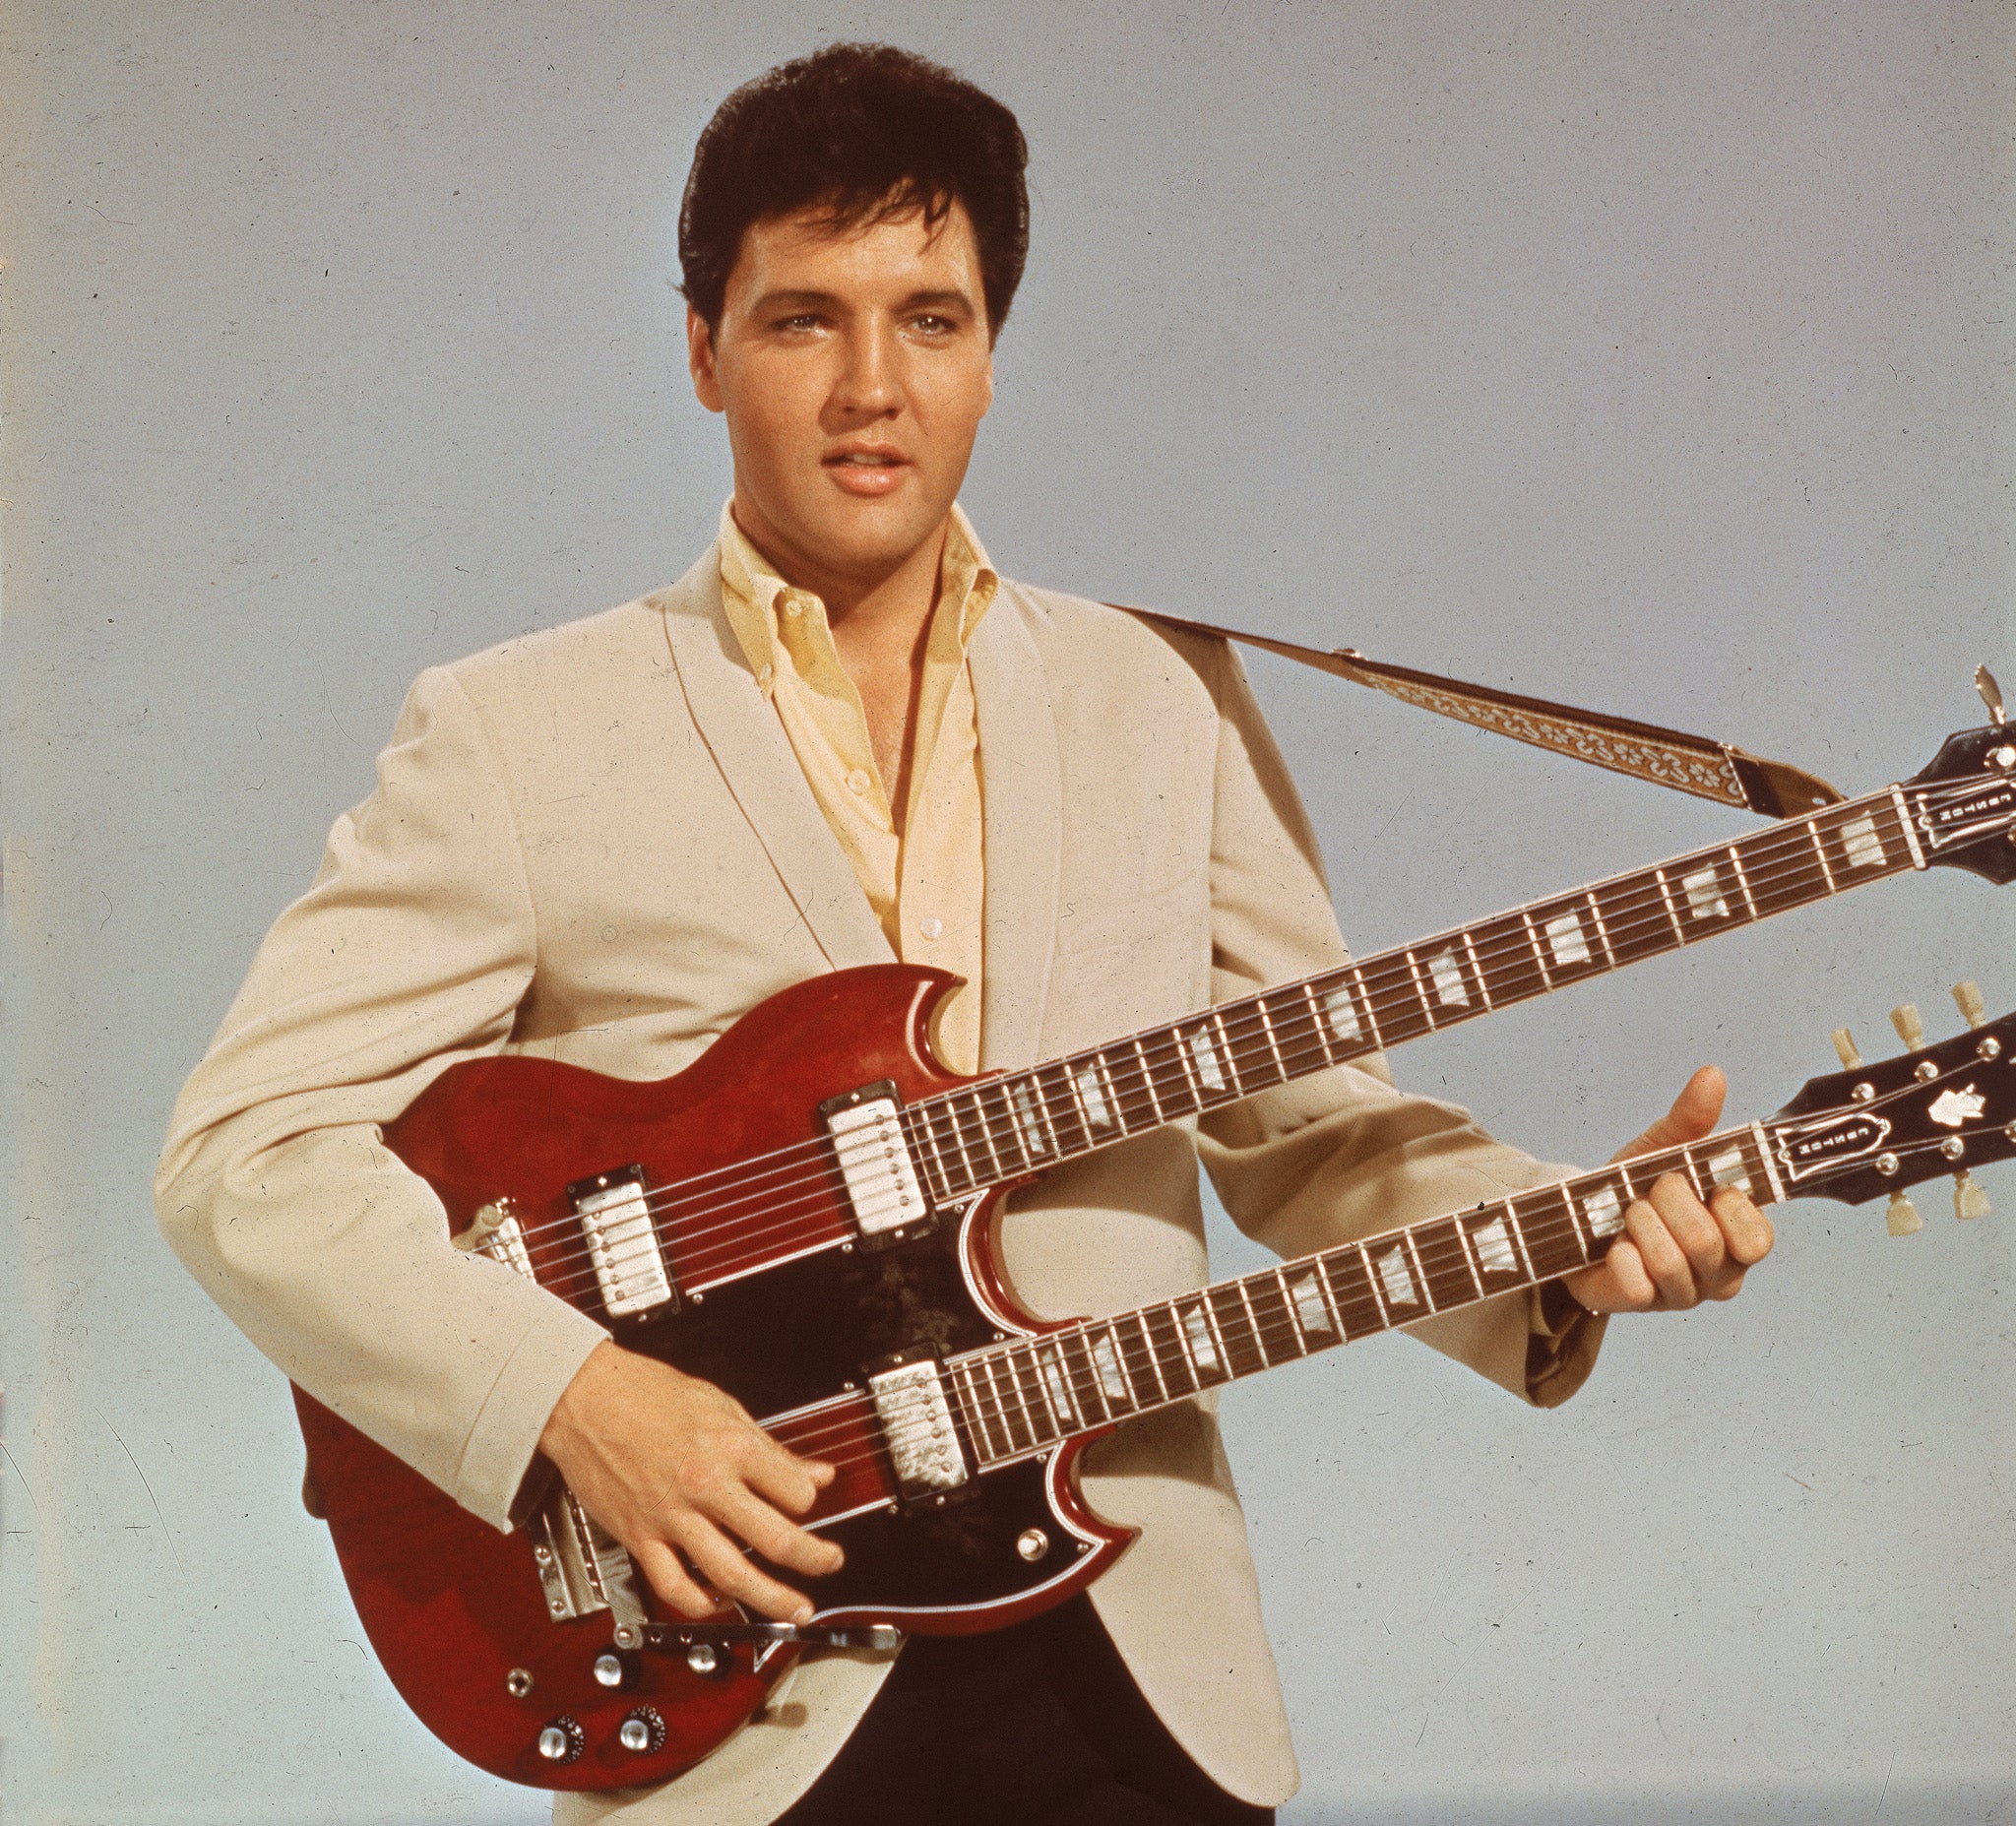 Graceland, residencia museo de Elvis Presley, ofrece a ...